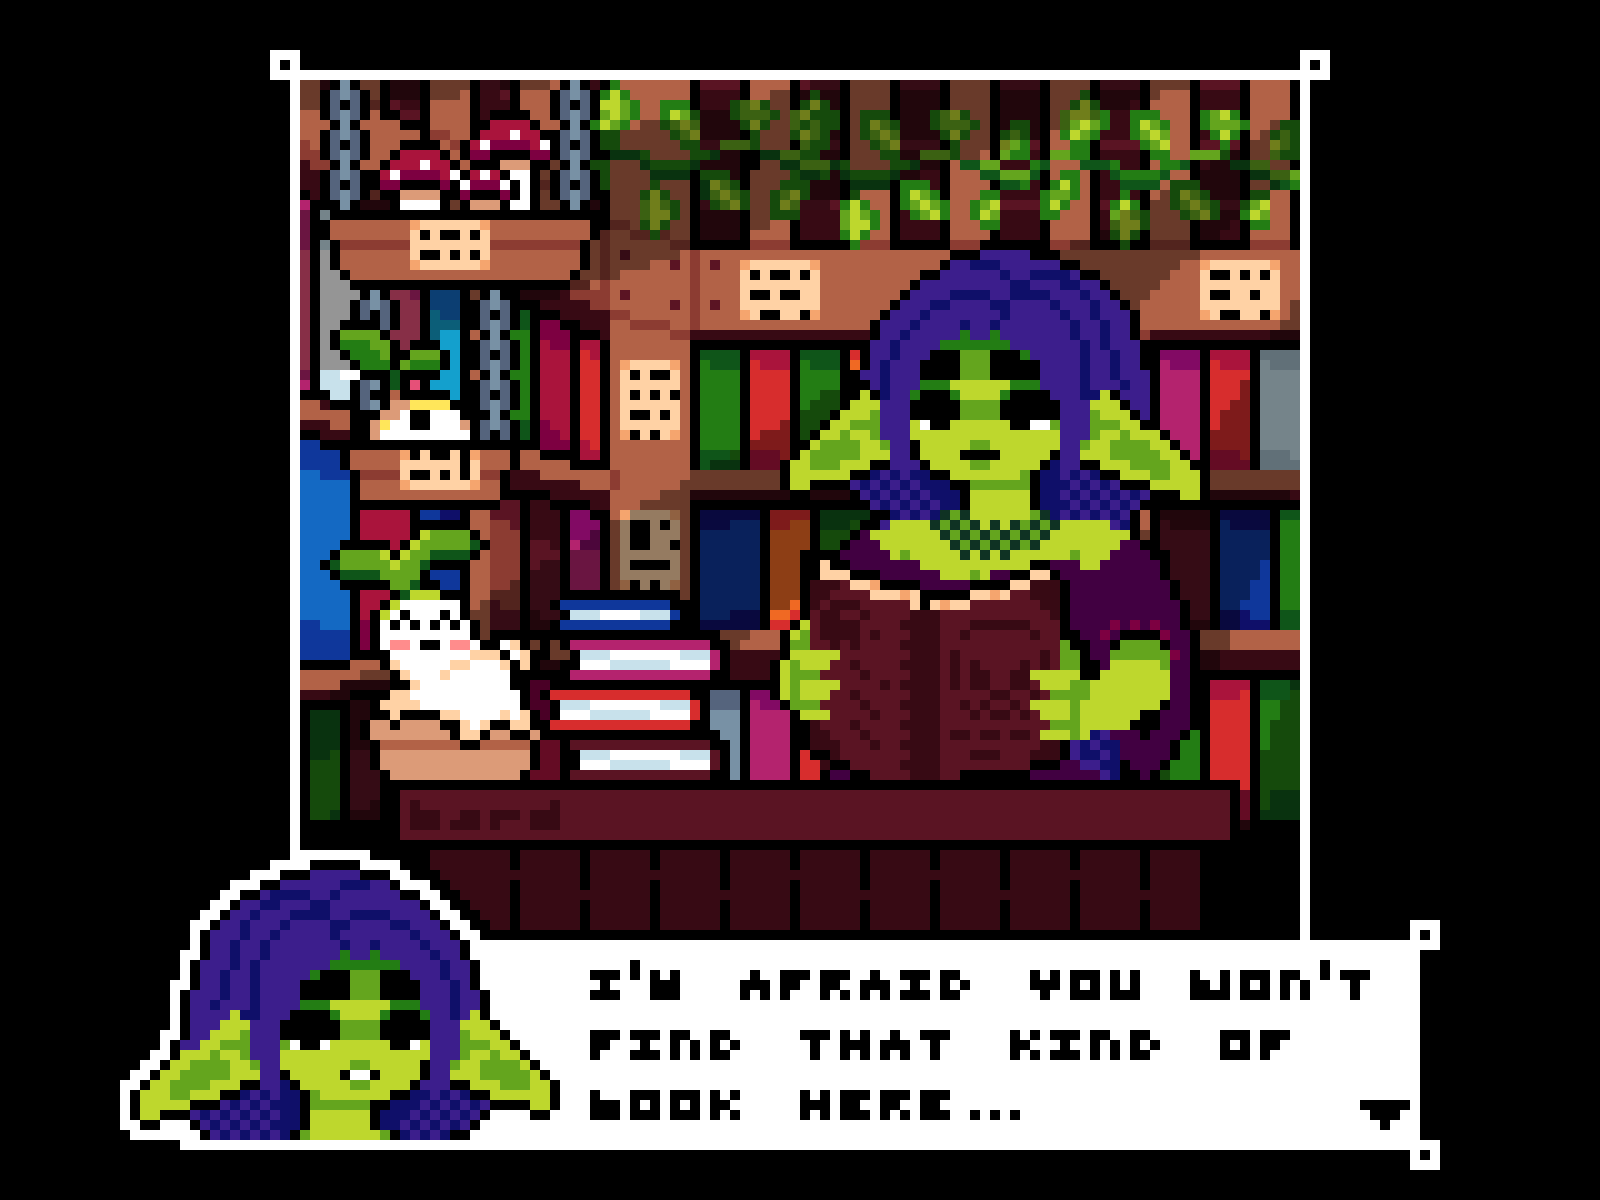 Library goblin